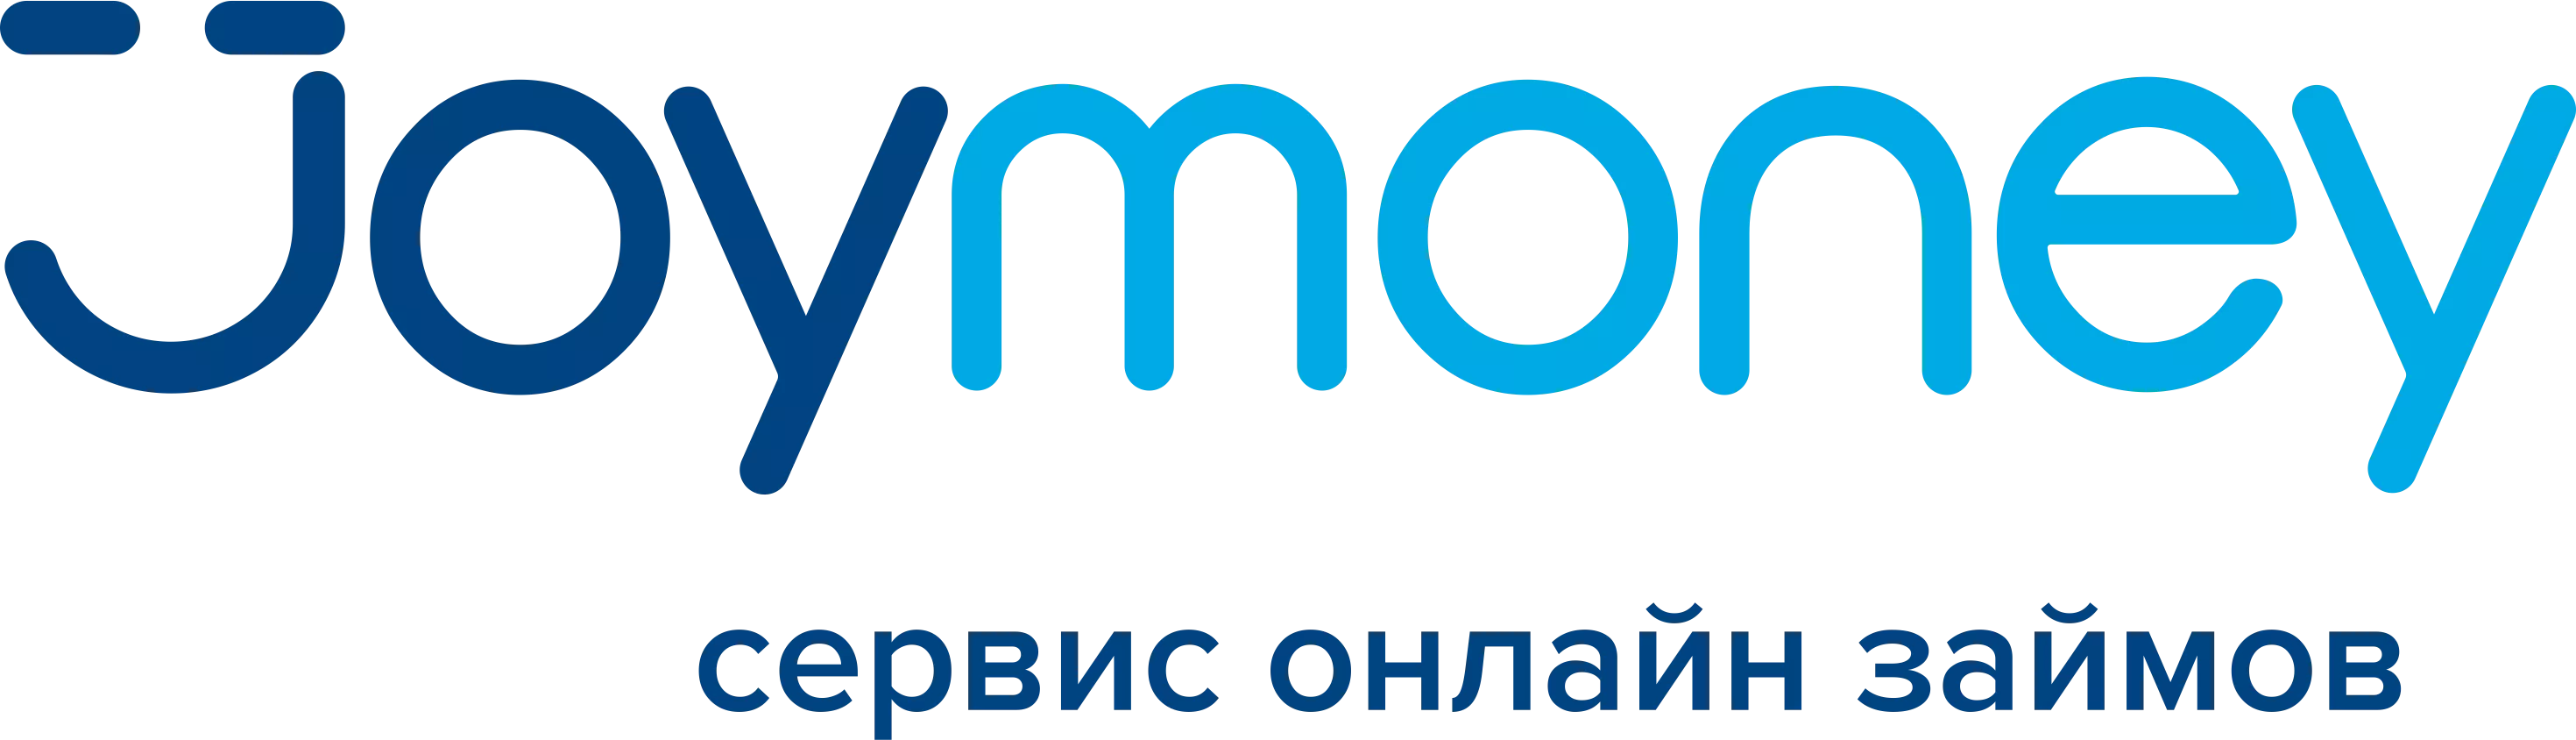 Займы онлайн с ежемесячным платежом кредит под залог недвижимости квартиры в москве